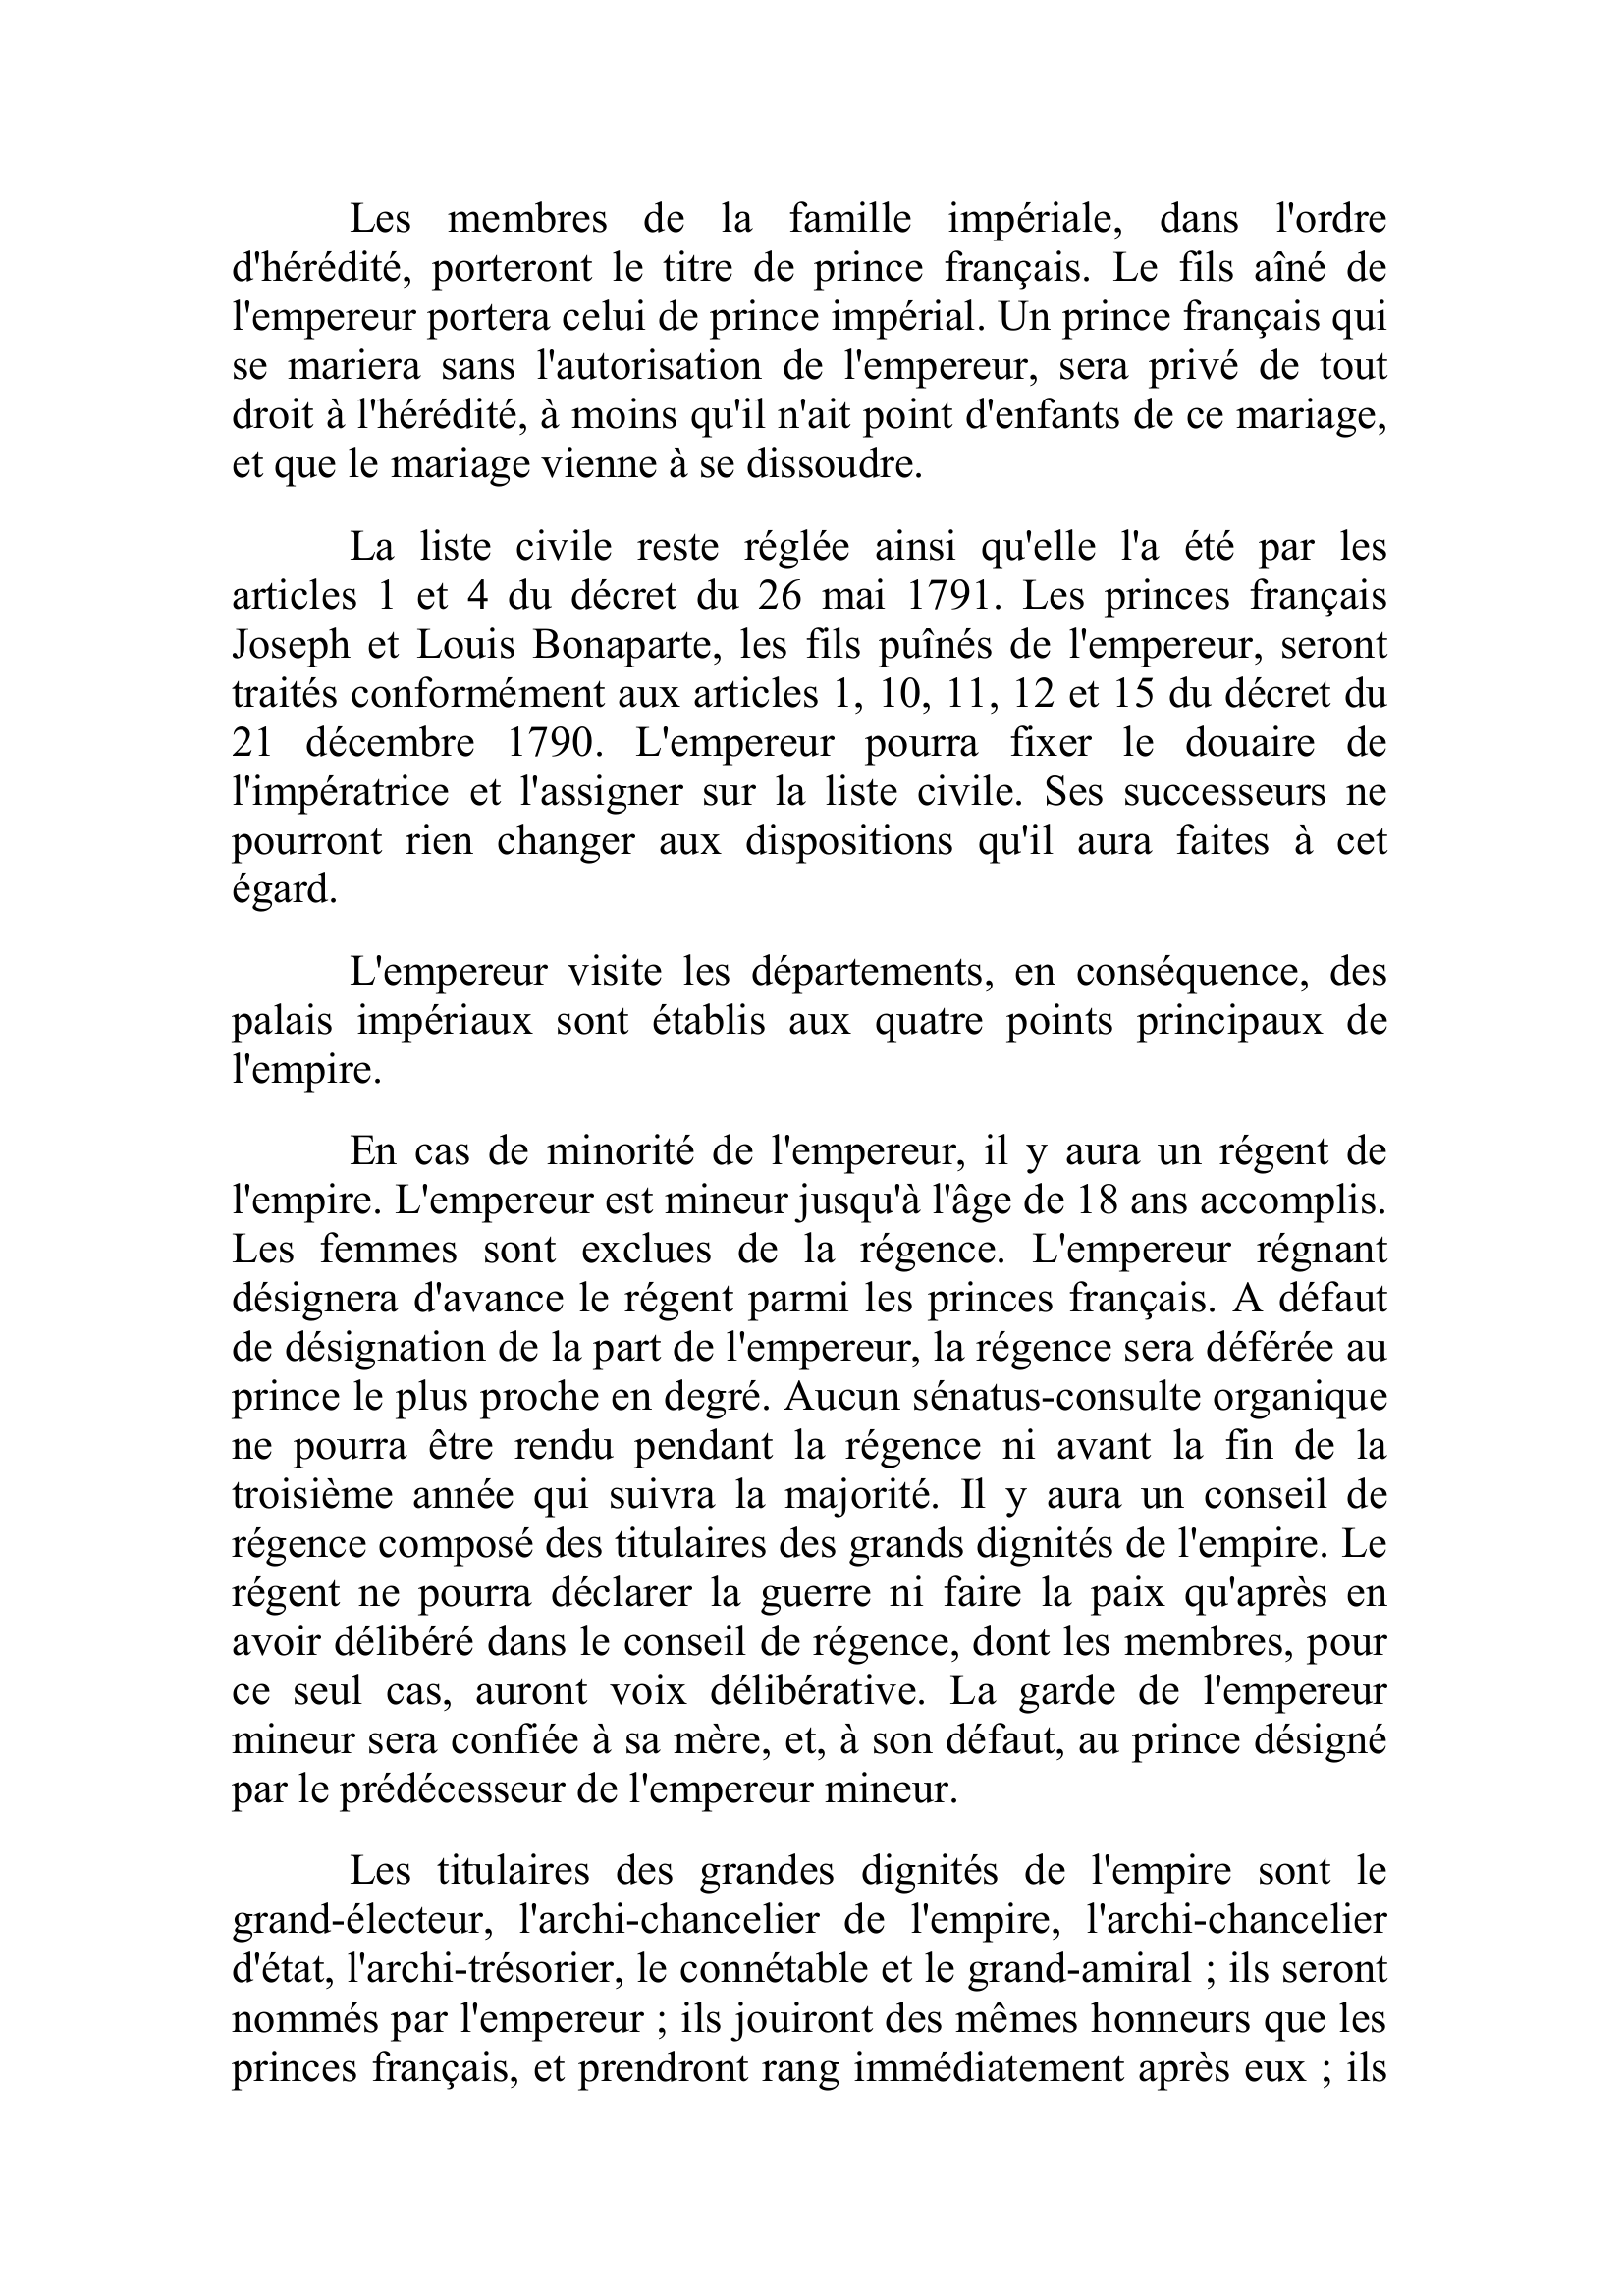 Prévisualisation du document République Française

Paris, 28 floréal

Le sénat conservateur s'est assemblé aujourd'hui sous la présidence du consul Cambacérès.